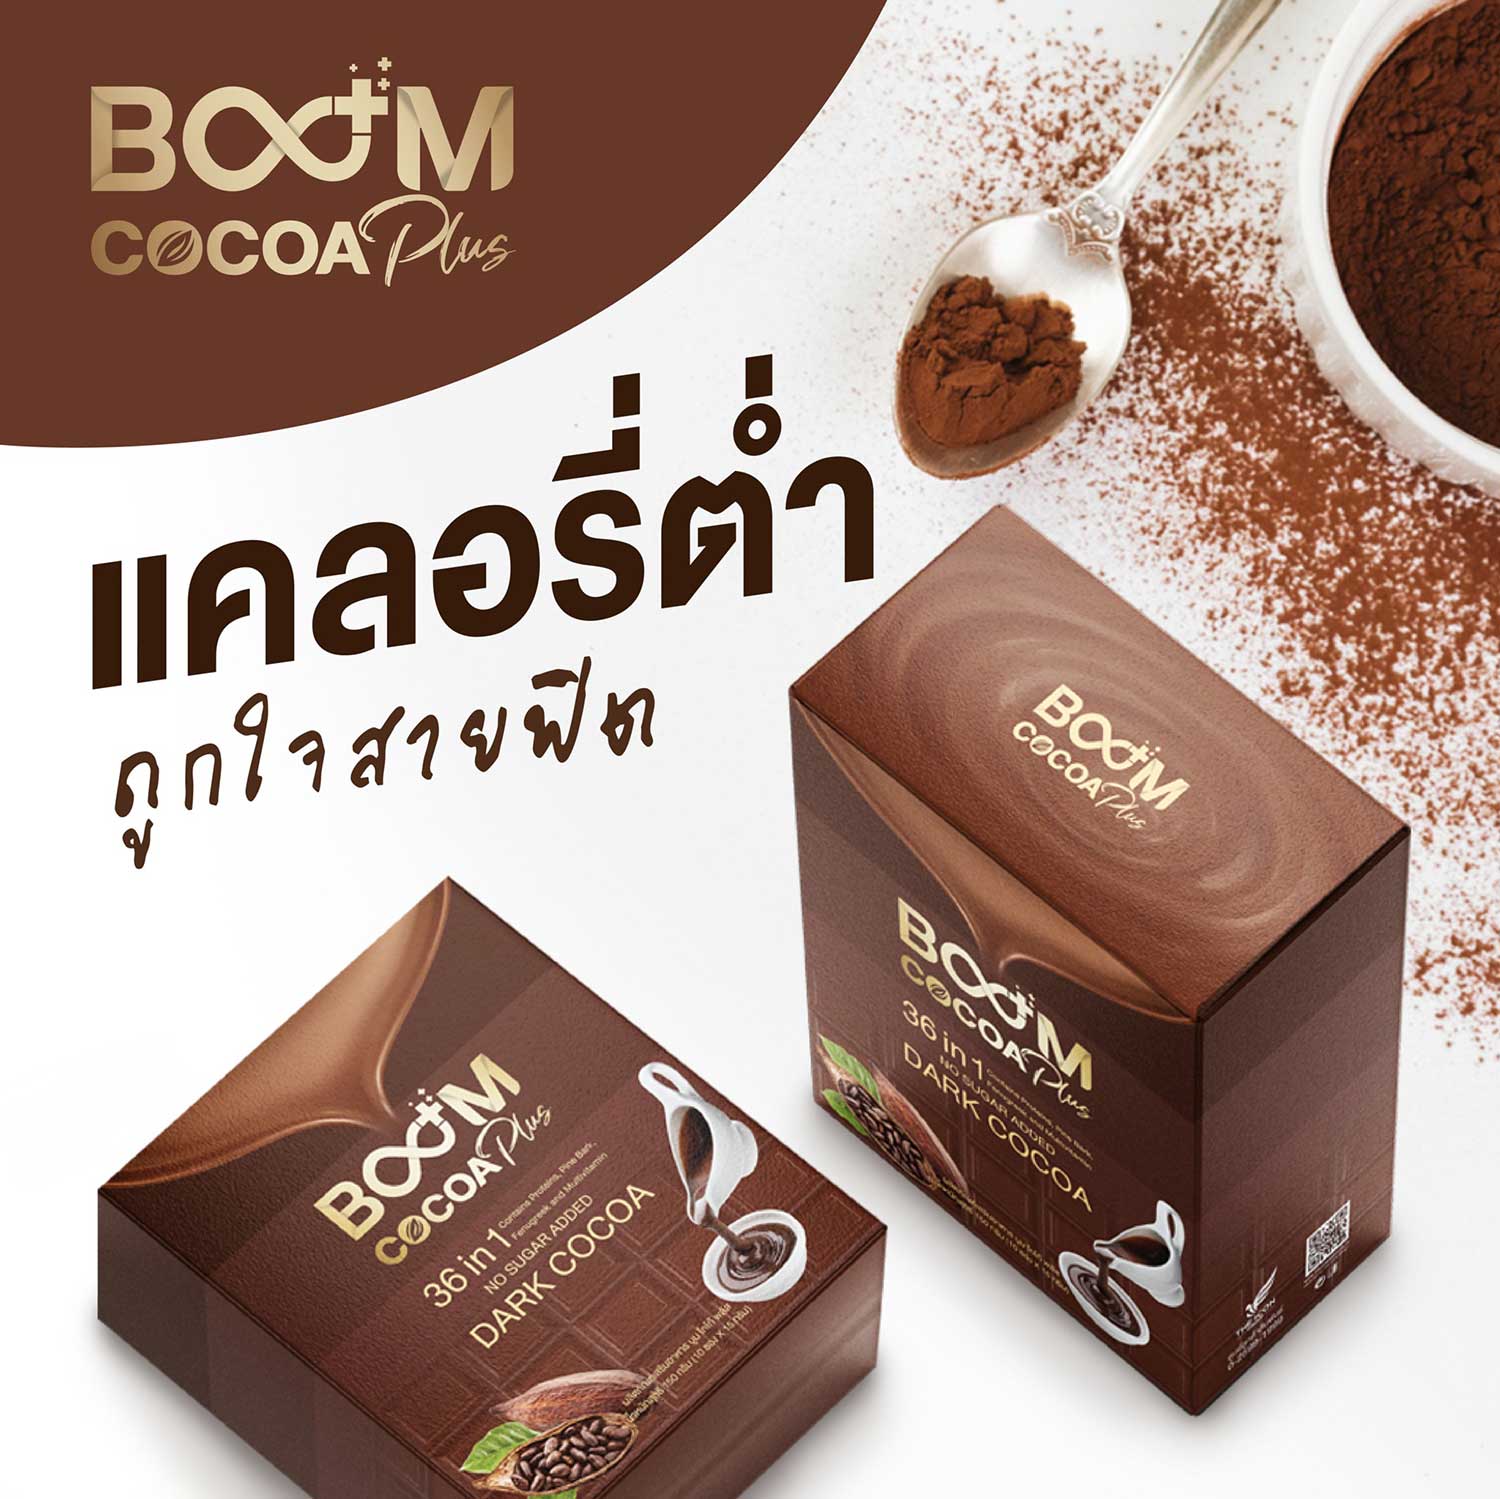 Boom Cocoa Plus โกโก้ที่ถูกใจสายฟิต